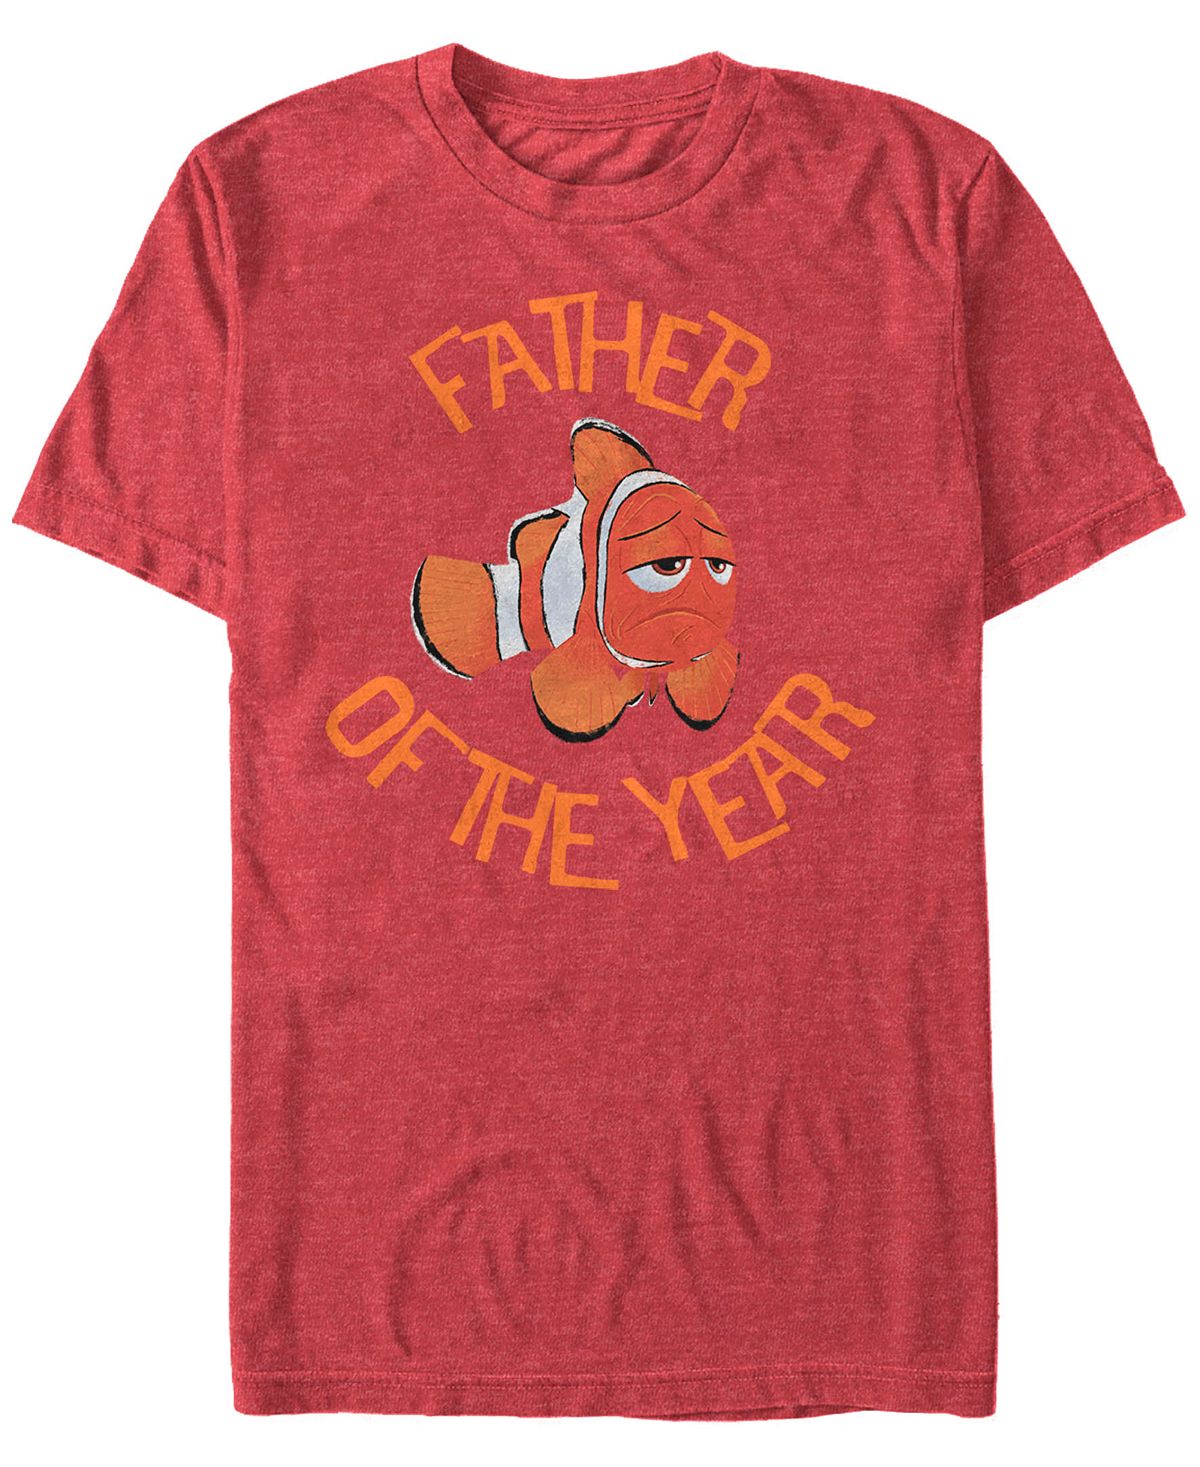 Мужская футболка с коротким рукавом disney pixar finding dory, marlin «отец года» Fifth Sun, мульти